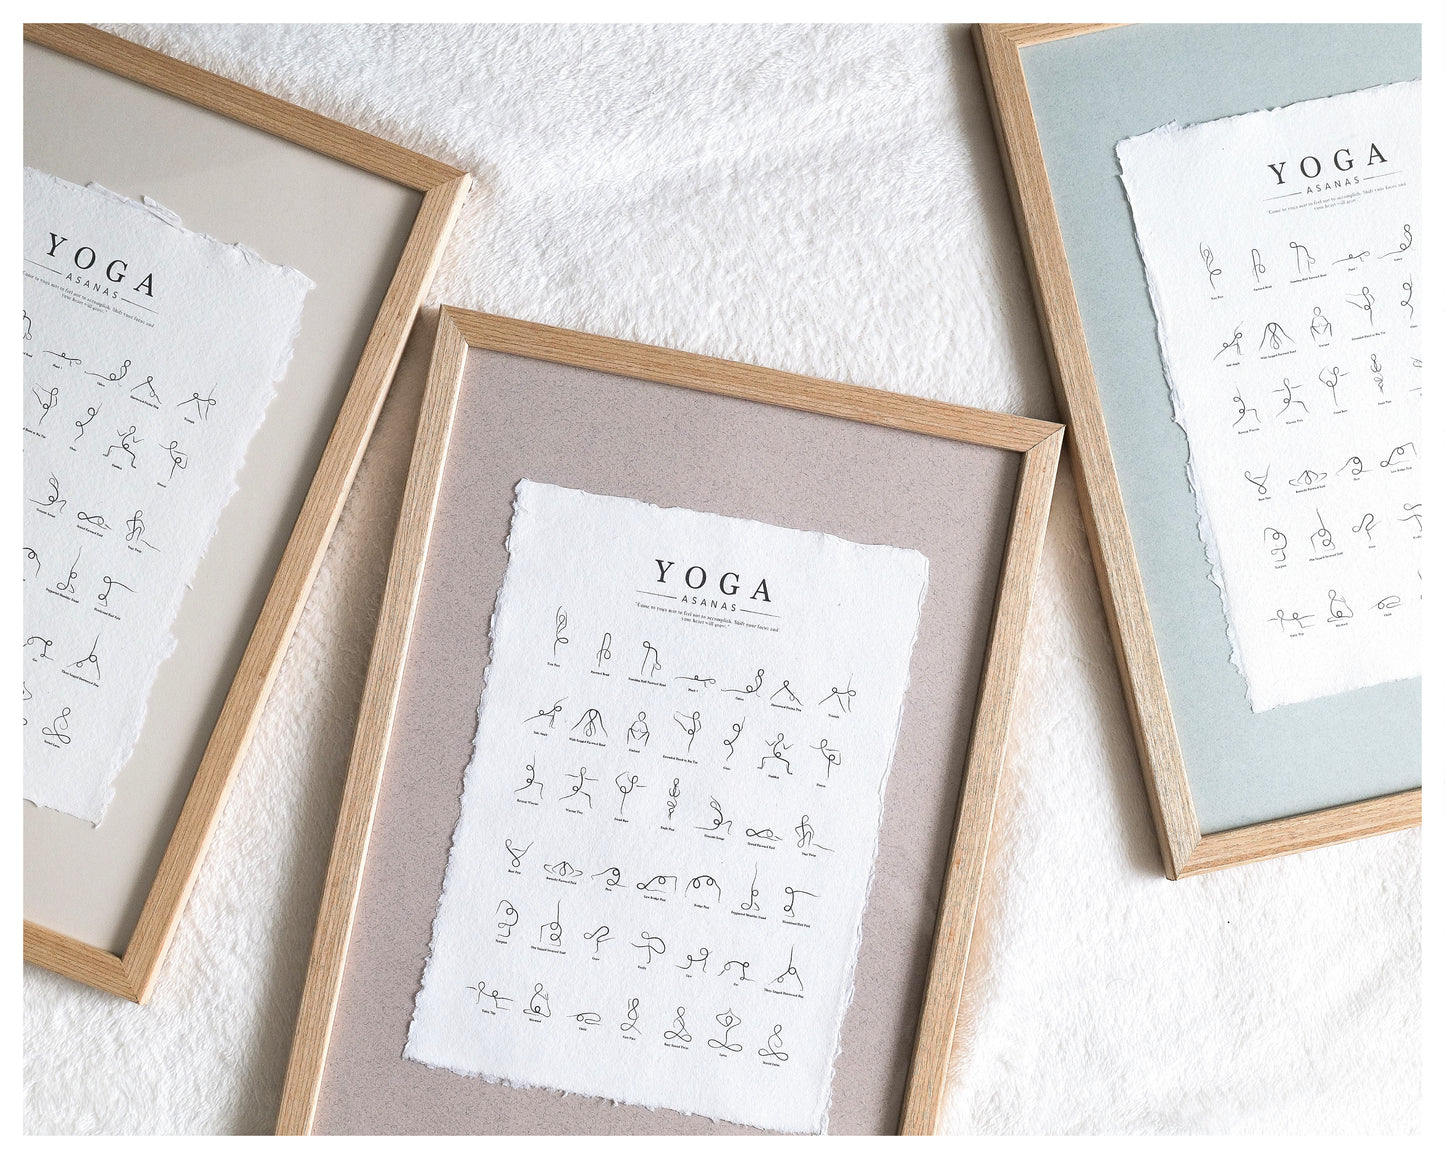 Framed Yoga Poses Poster - Cotton Rag Paper Art